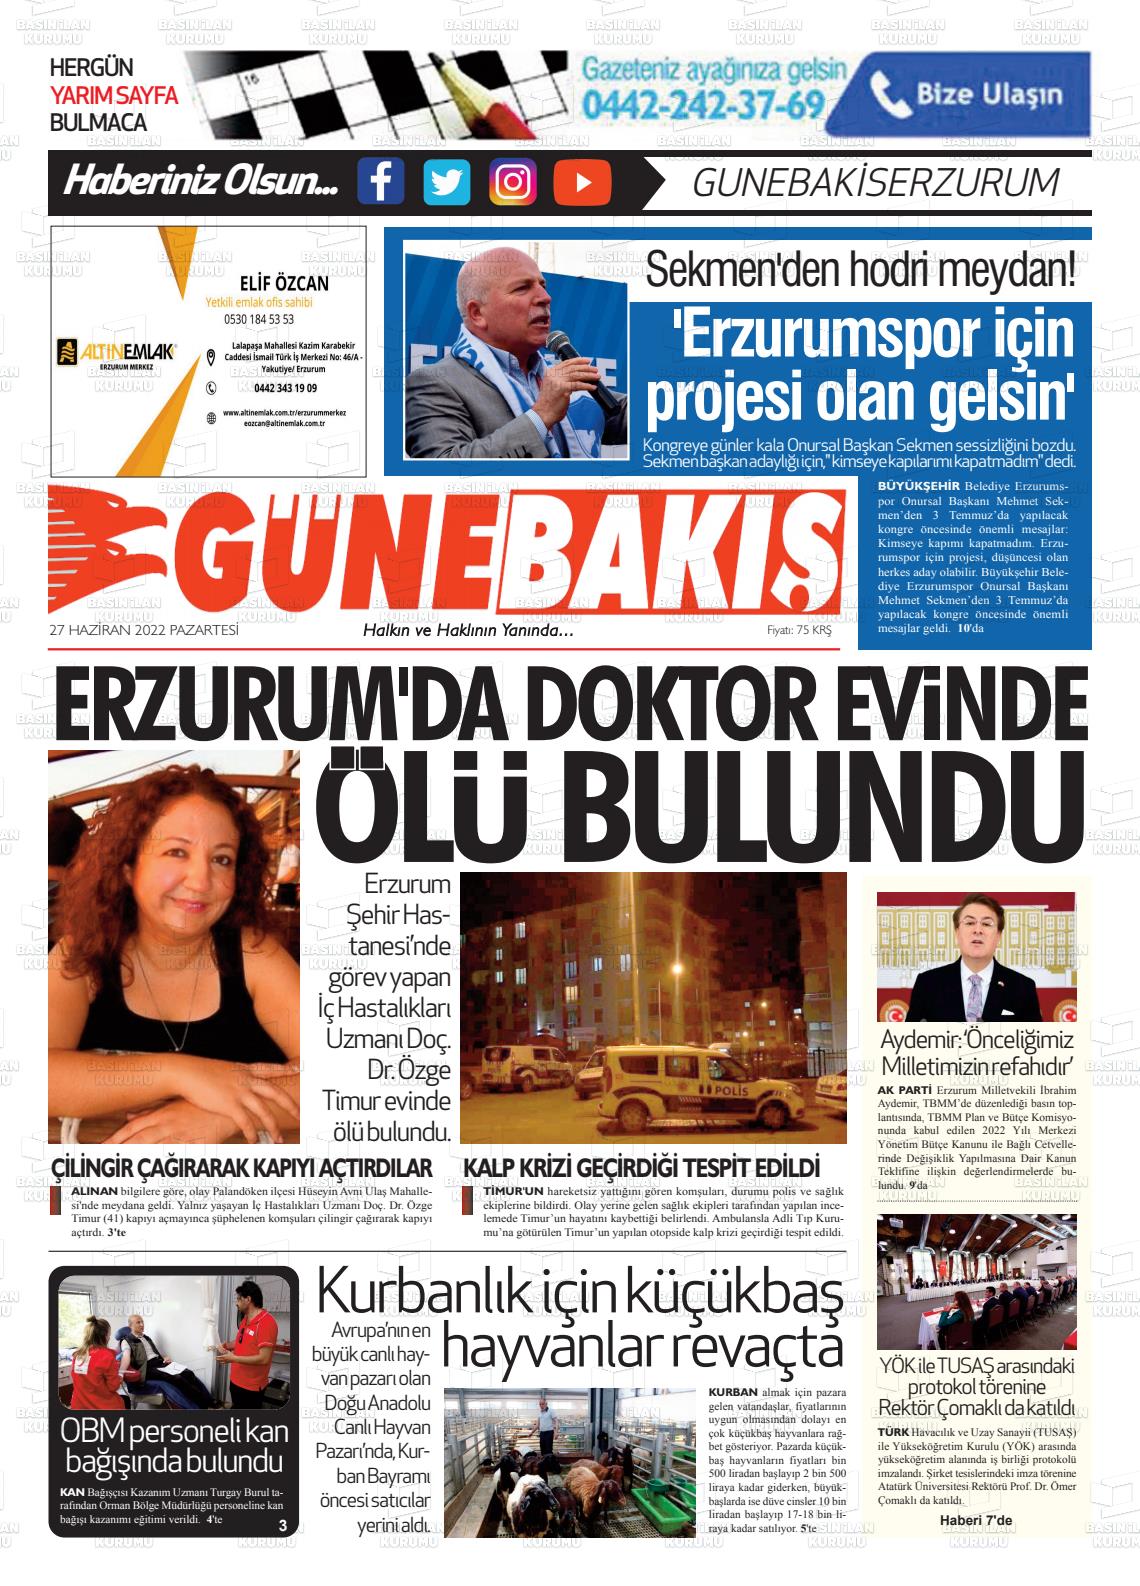 27 Haziran 2022 Erzurum Günebakış Gazete Manşeti